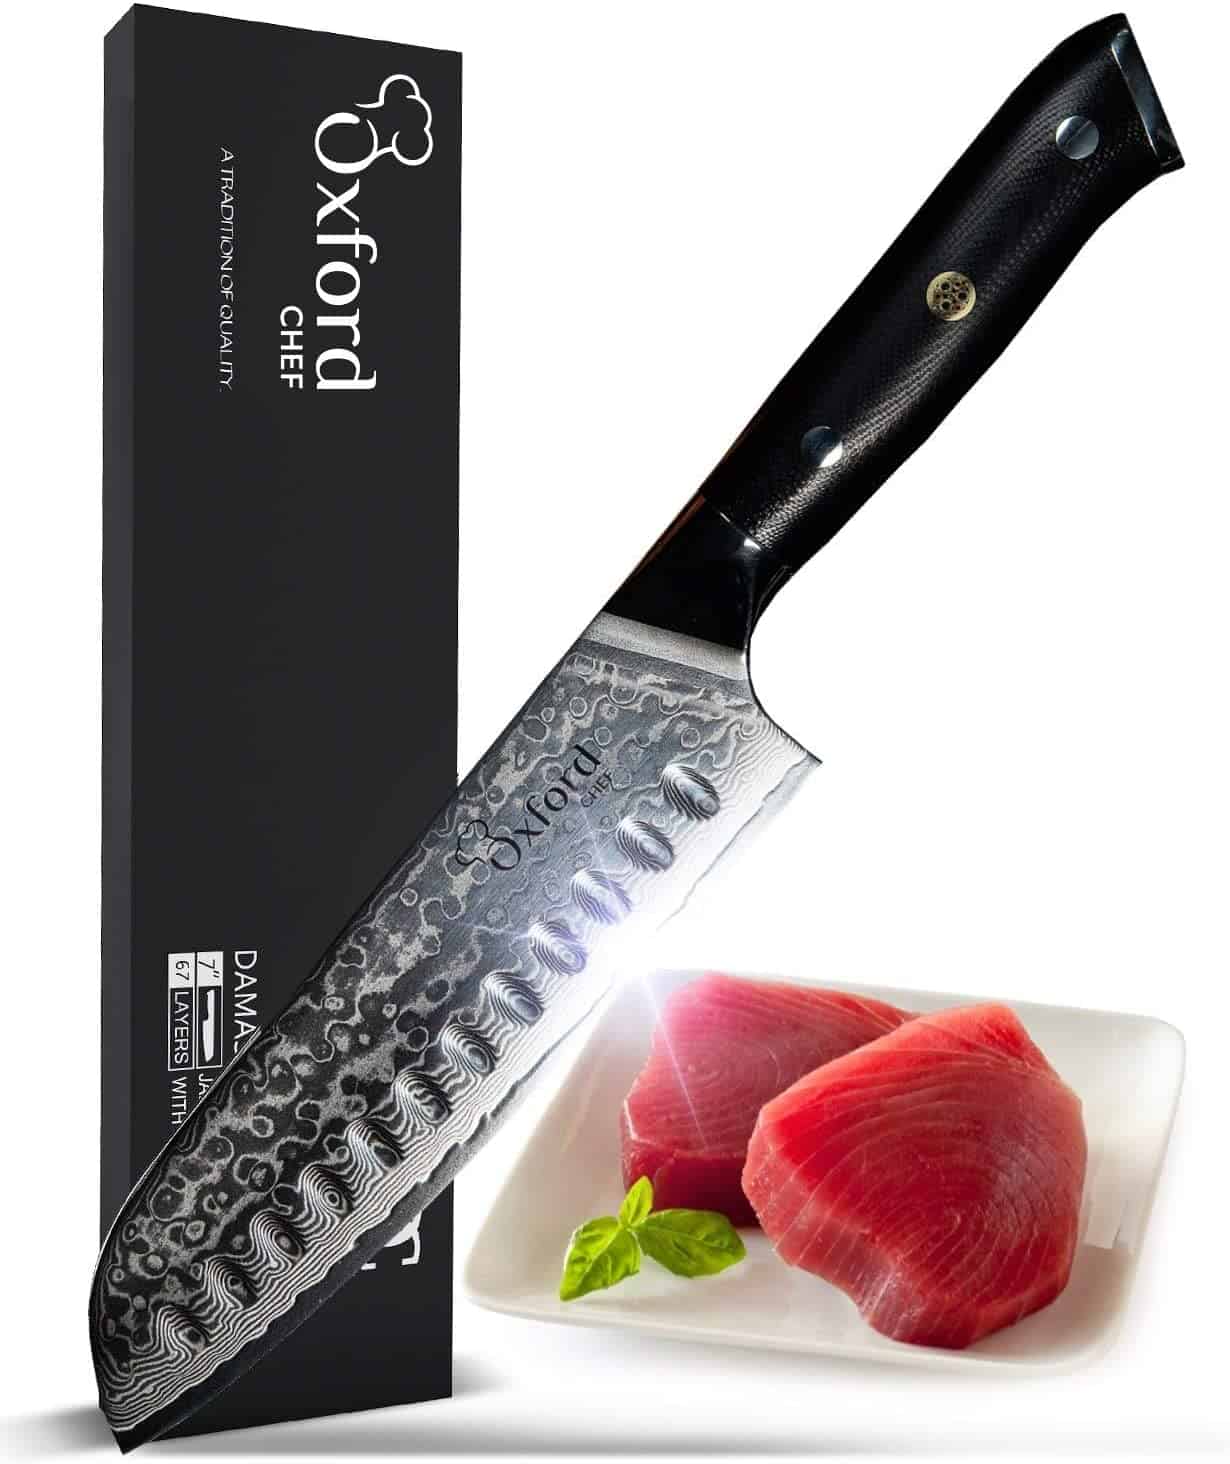 Cyllell swshi orau ar gyfer torri rholiau - Oxford Chef Santoku Knife